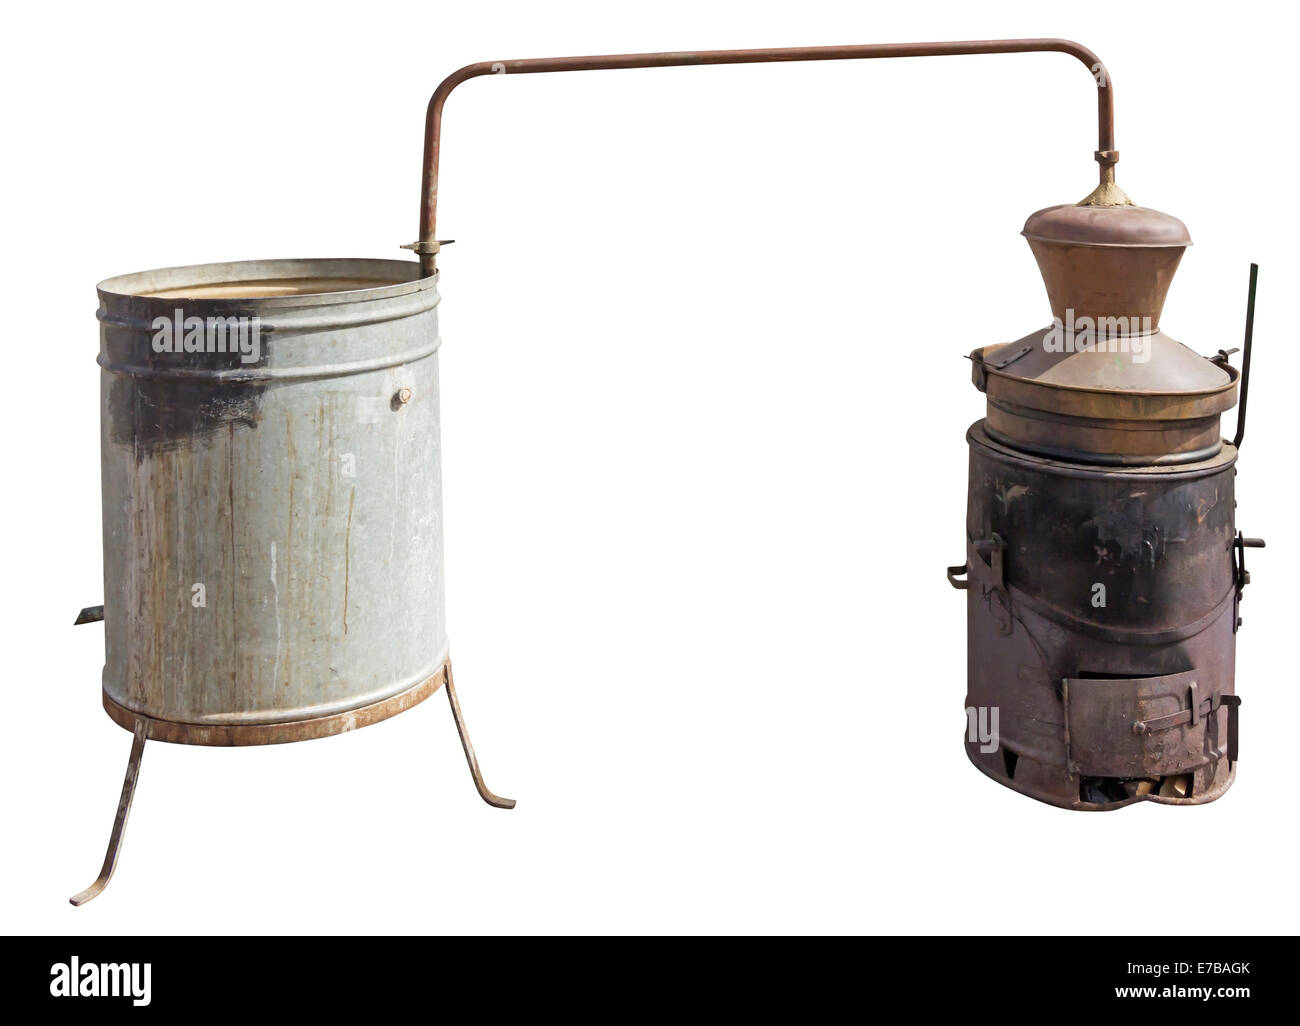 Vieille chaudière en cuivre utilisés pour obtenir une eau-de-vie  traditionnelle, isolée avec Clipping Path Photo Stock - Alamy